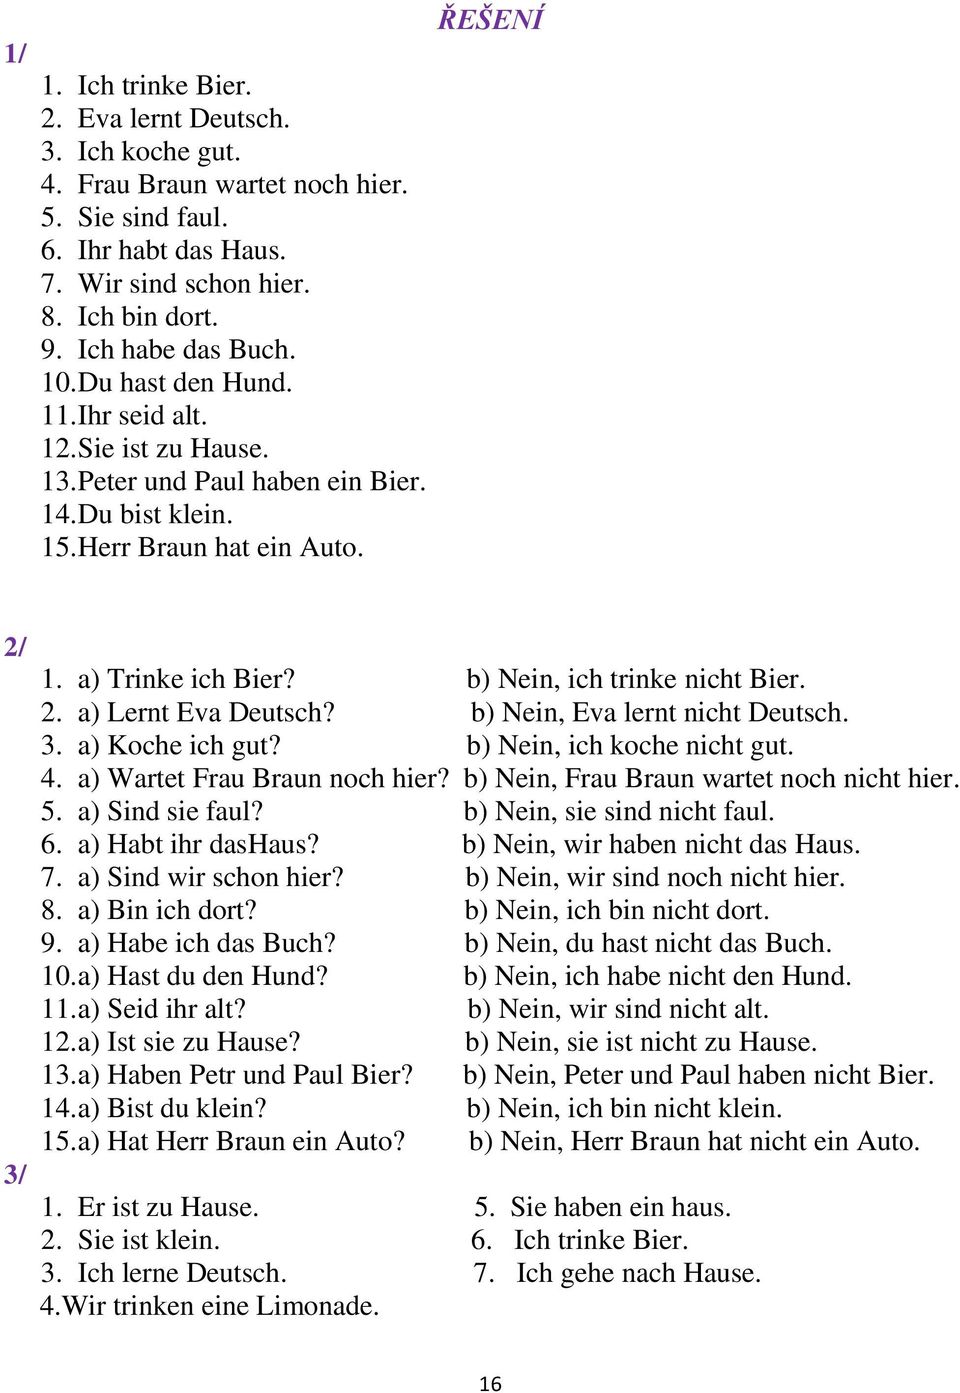 b) Nein, ich trinke nicht Bier. 2. a) Lernt Eva Deutsch? b) Nein, Eva lernt nicht Deutsch. 3. a) Koche ich gut? b) Nein, ich koche nicht gut. 4. a) Wartet Frau Braun noch hier?